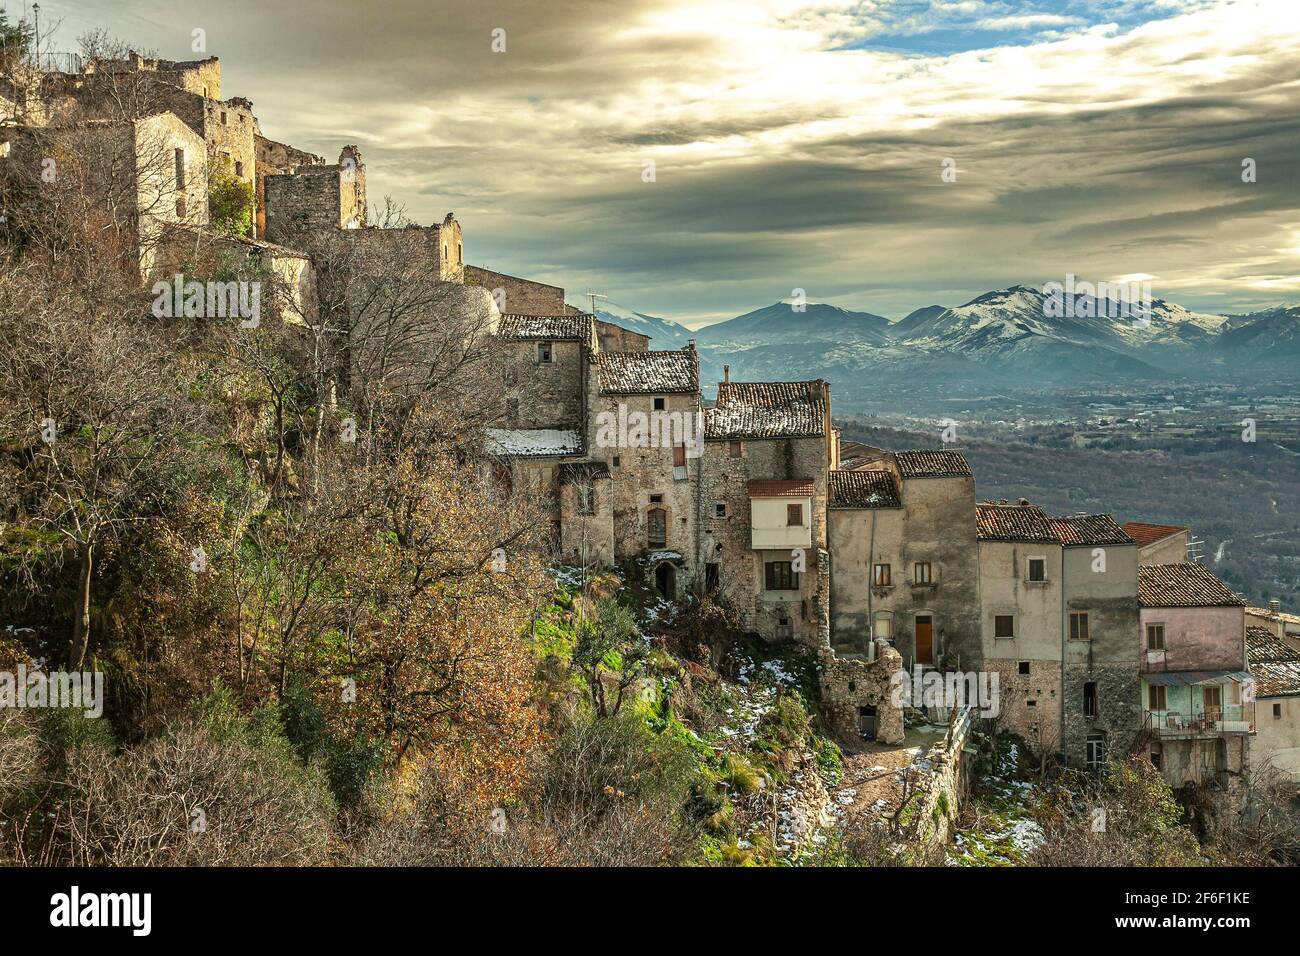 Maisons penchées les unes contre les autres dans un village de montagne fortifié. Roccacacagale, province de l'Aquila, Abruzzes, Italie, Europe Banque D'Images